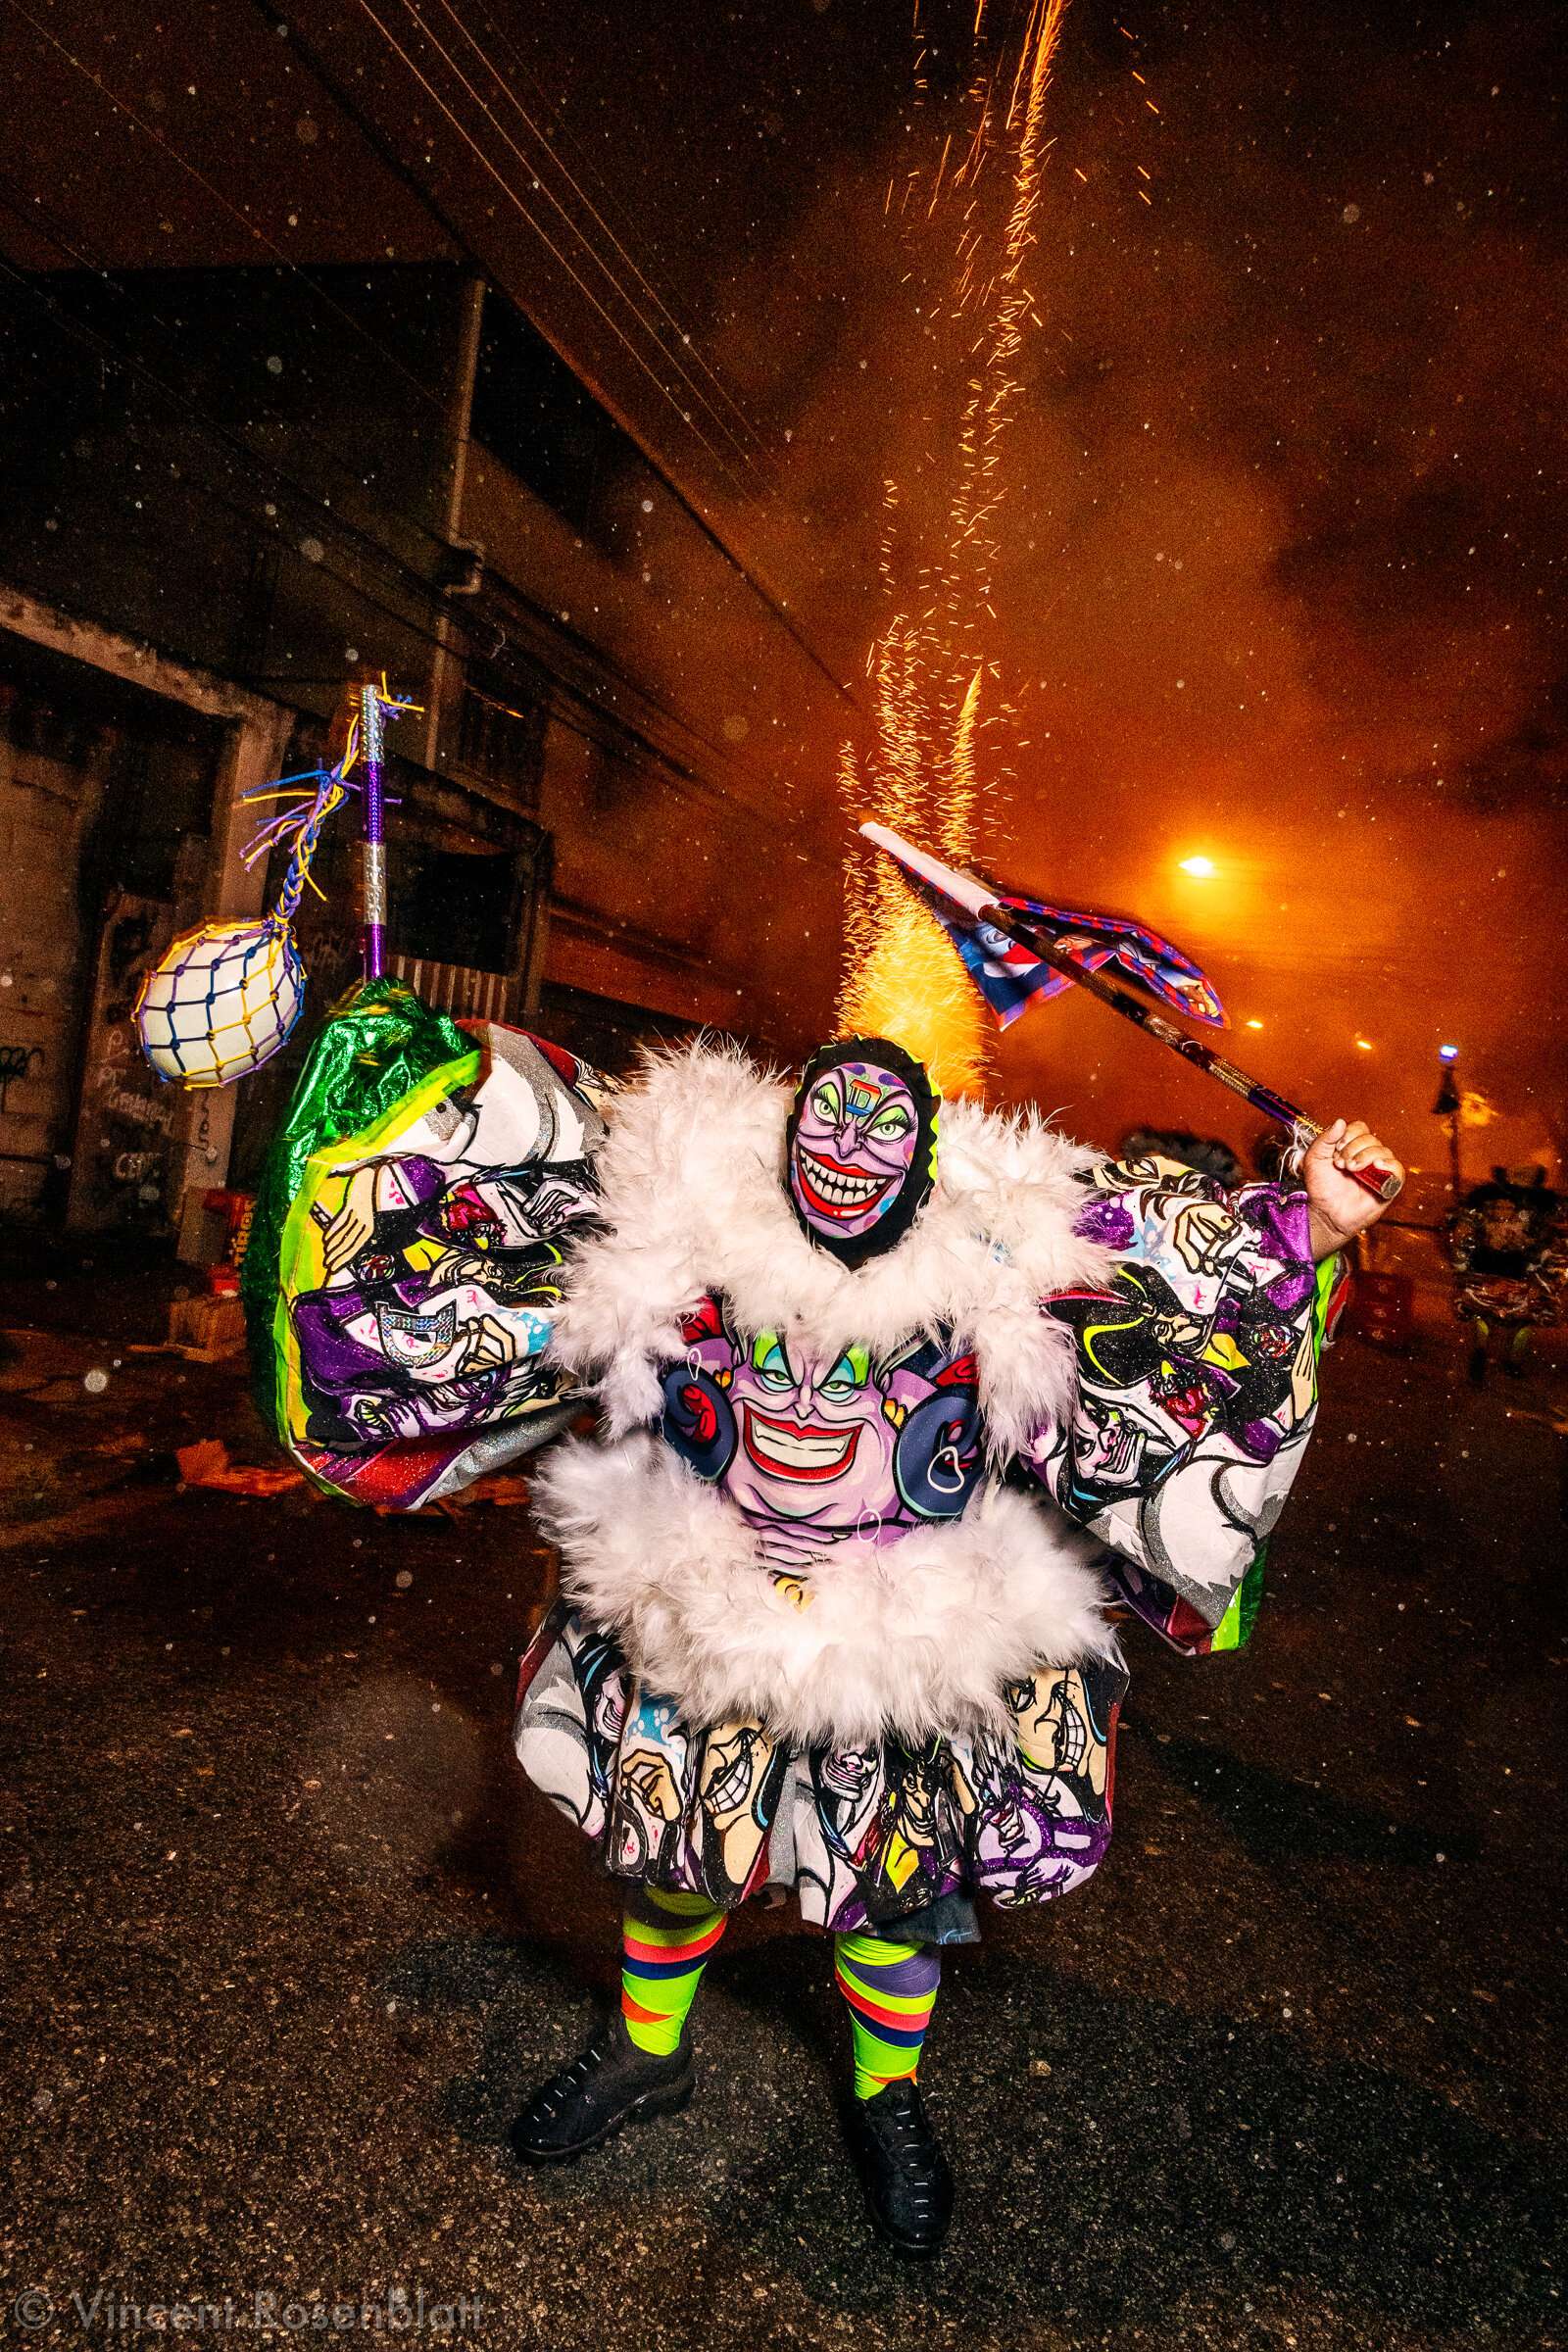  Show of the bate-bola group Truque de Mestre (Master Trick) in the Urubu favela, North Zone of Rio de Janeiro, Carnival 2020. 